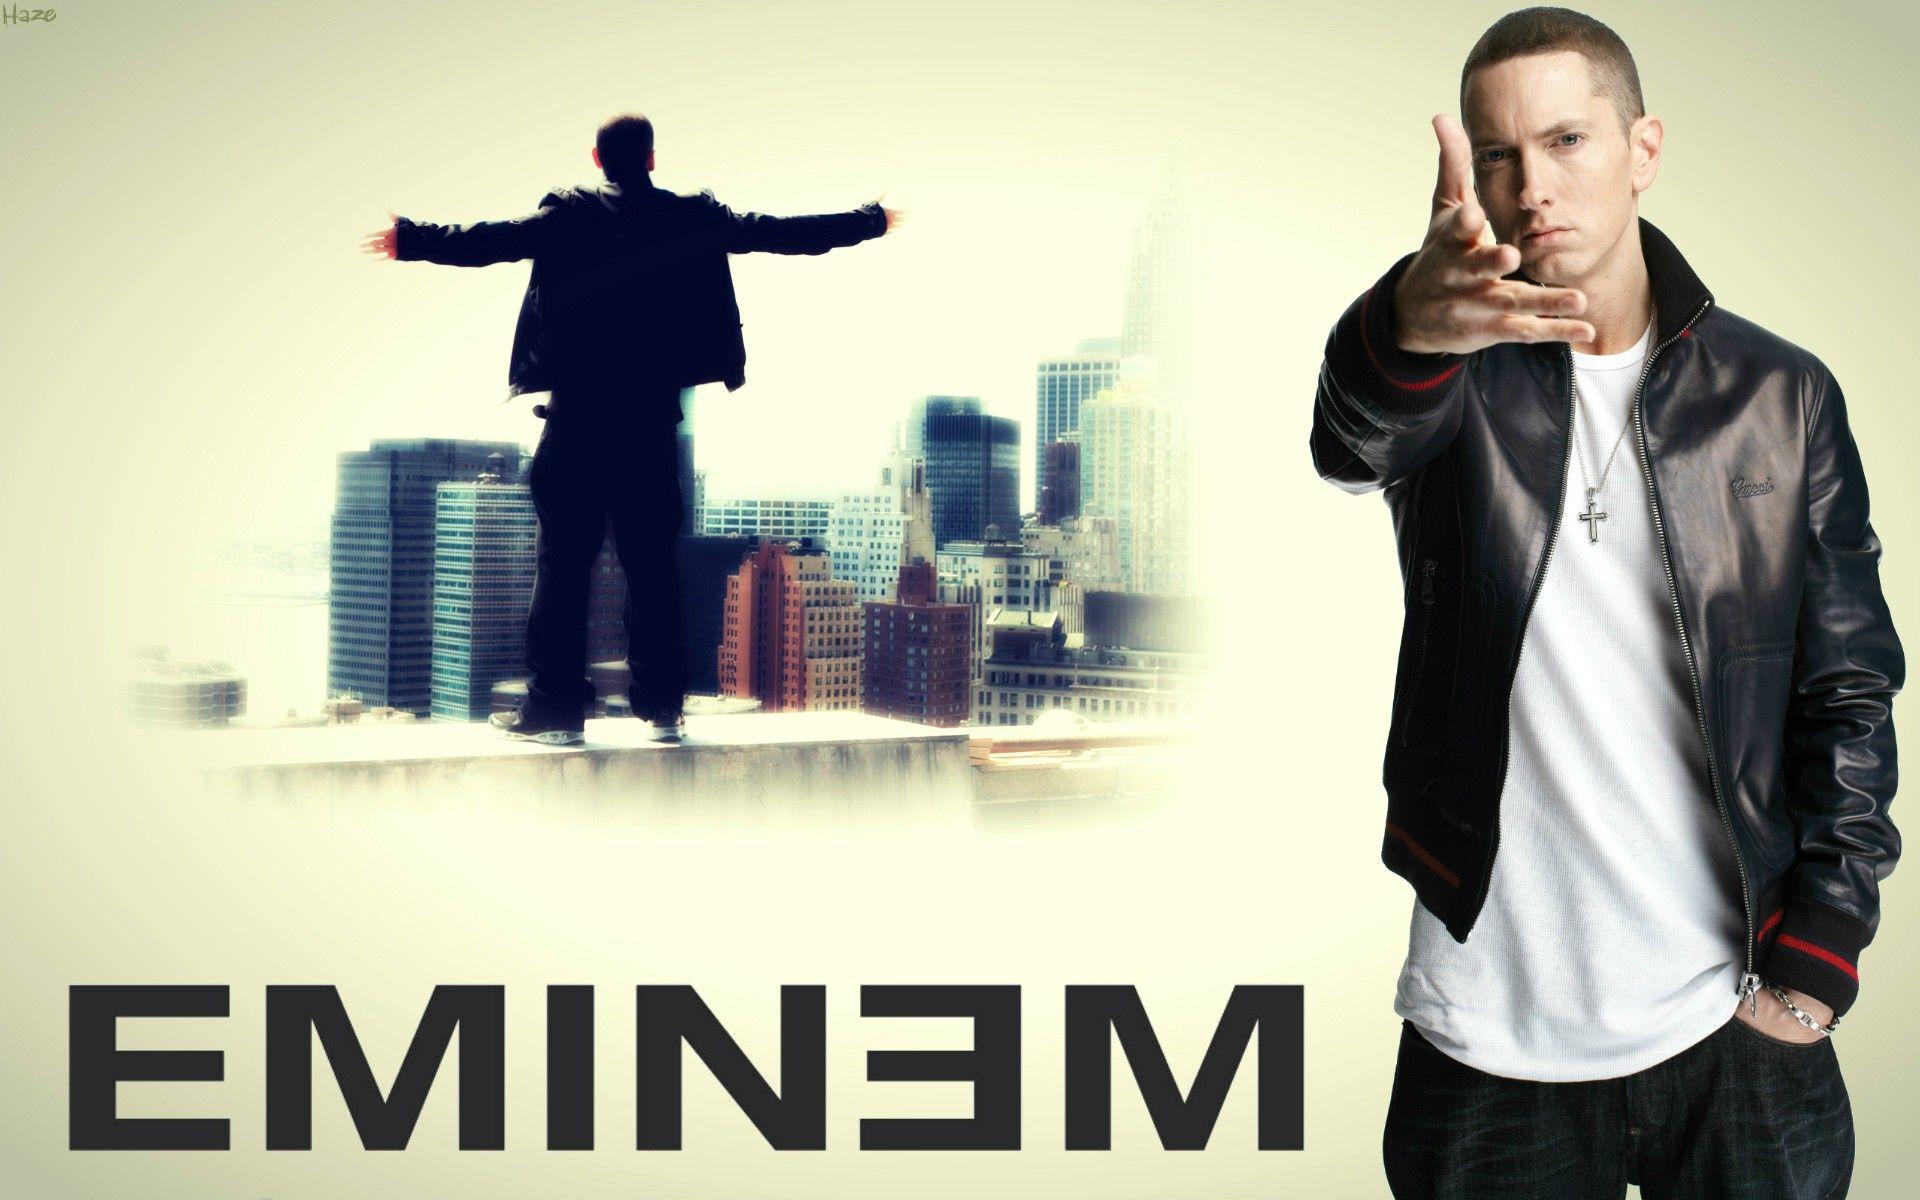 Download the Eminem Wallpaper, Eminem iPhone Wallpaper, Eminem